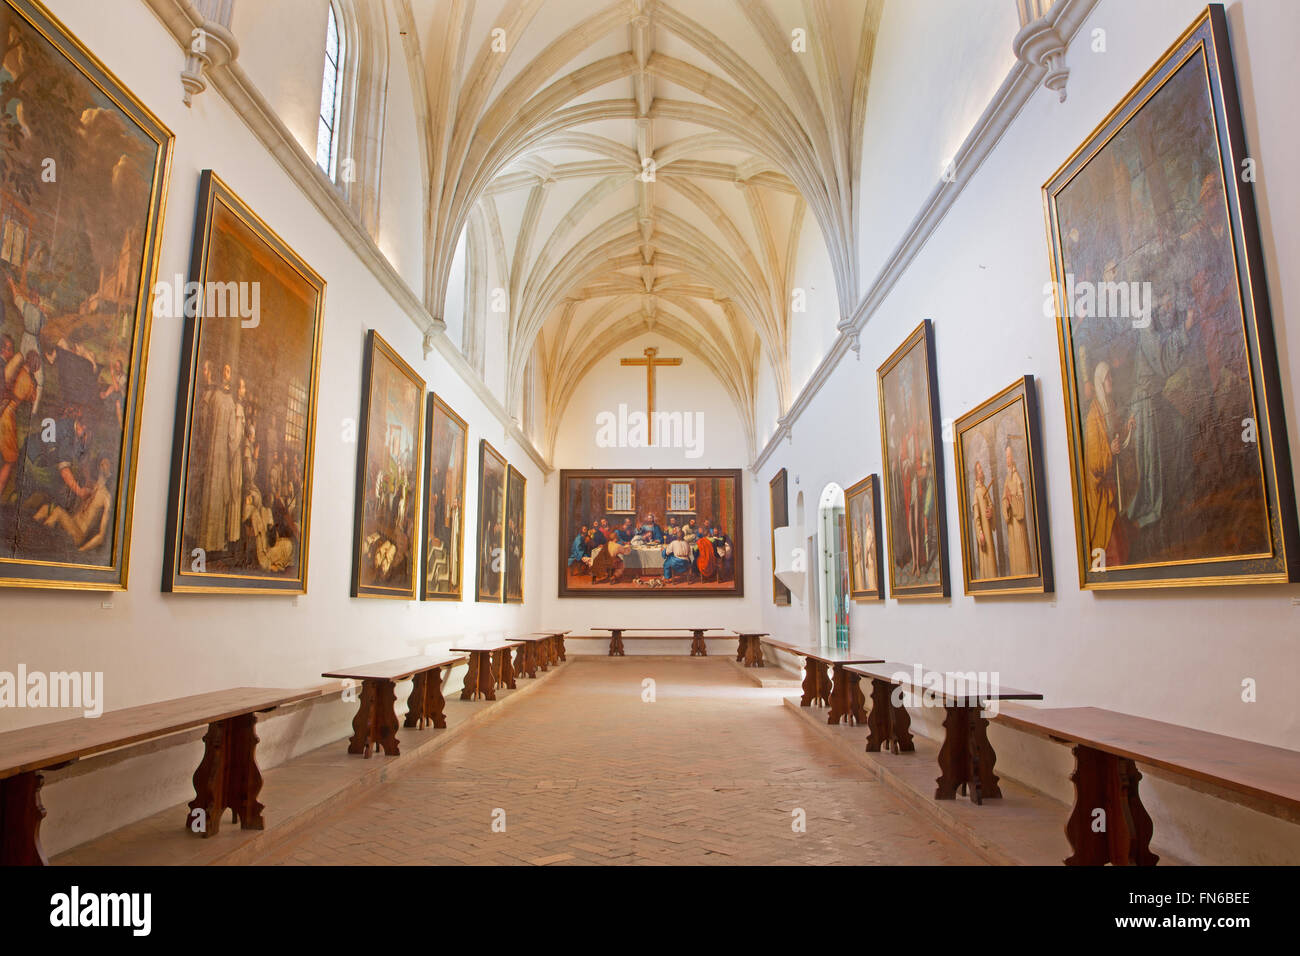 GRANADA, SPAIN - MAY 31, 2015: The refectory in Monasterio de la Cartuja. Stock Photo